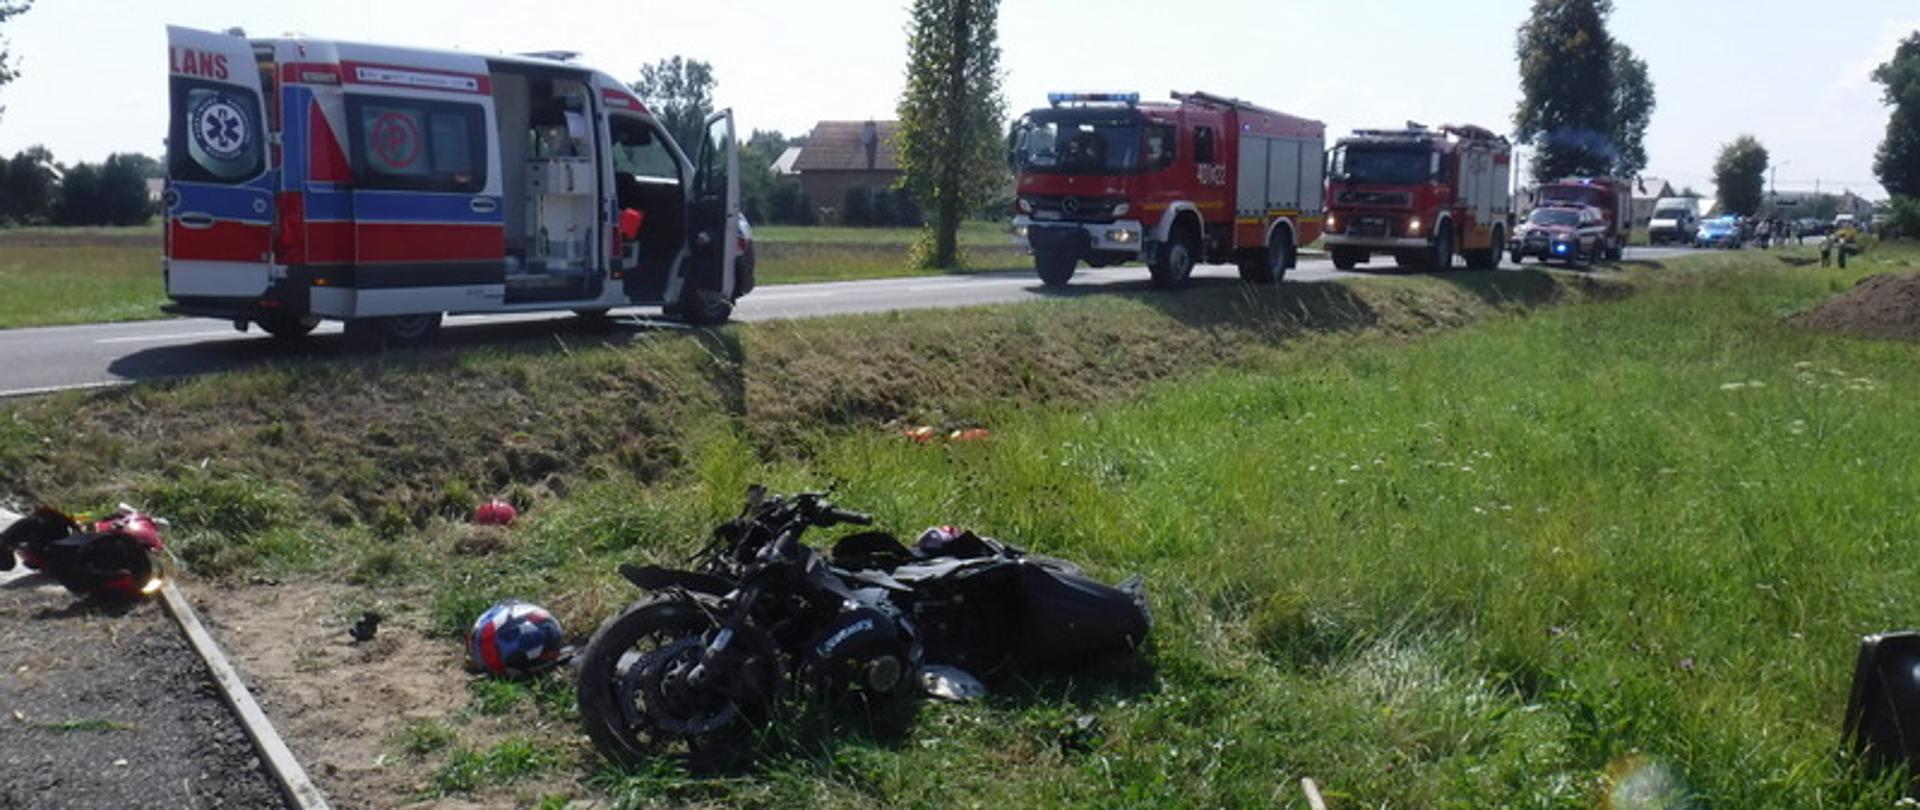 Zdjęcie główne przedstawia rozbity motocykl znajdujący się w przydrożnym rowie. Na drodze stoi ambulans ZRM oraz samochody pożarnicze z JRG Bochnia: GBARt 2,5/16, SCRt, SLRR.